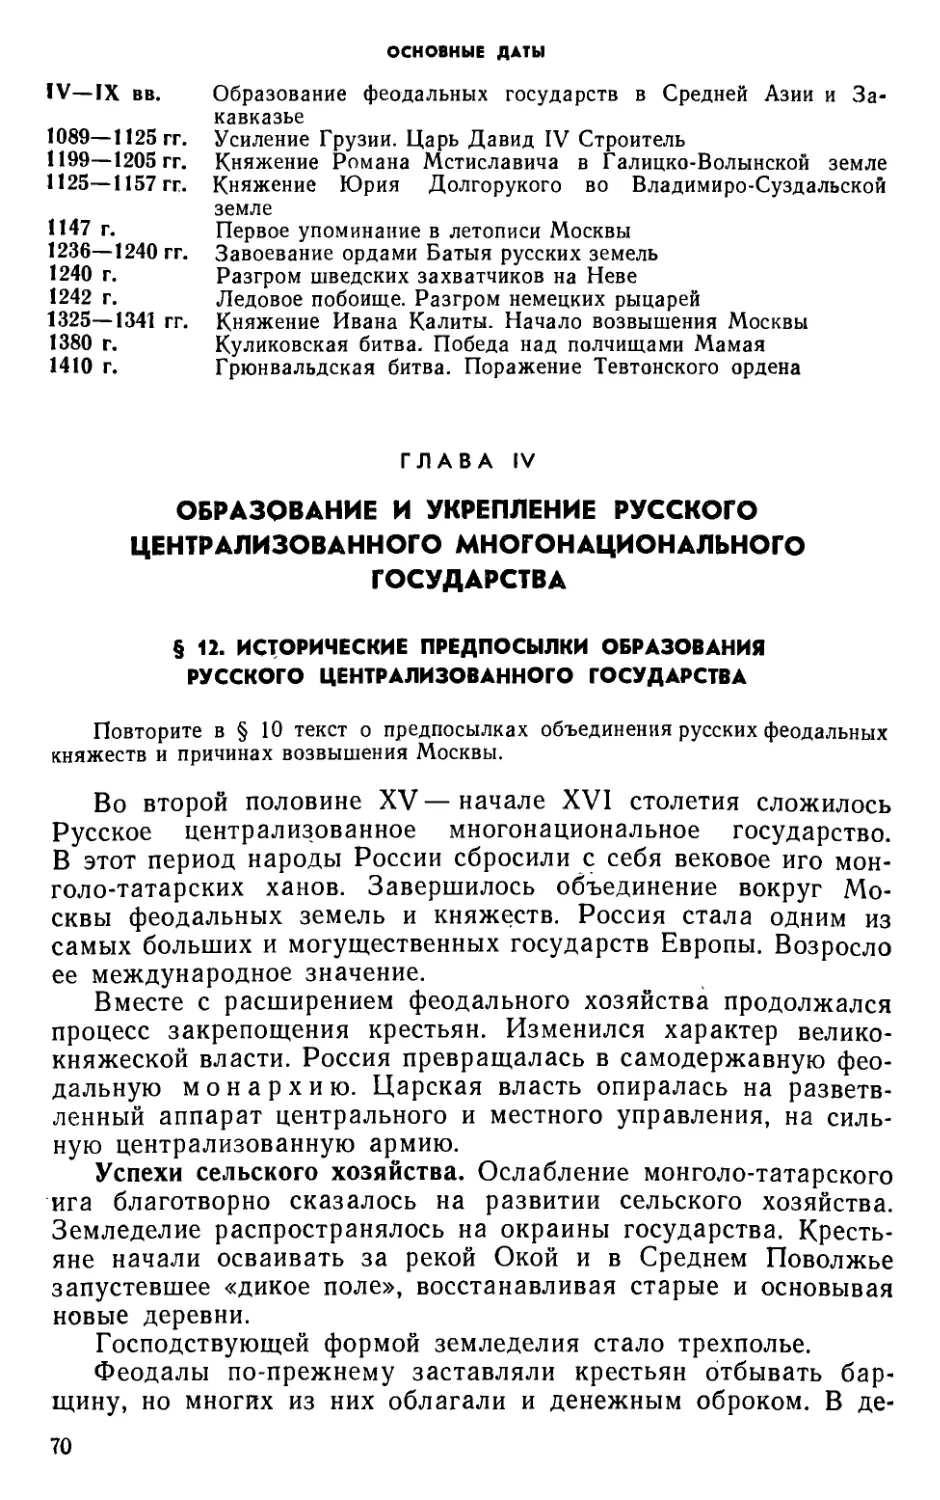 Глава IV. Образование и укрепление Русского централизованного многонационального государства